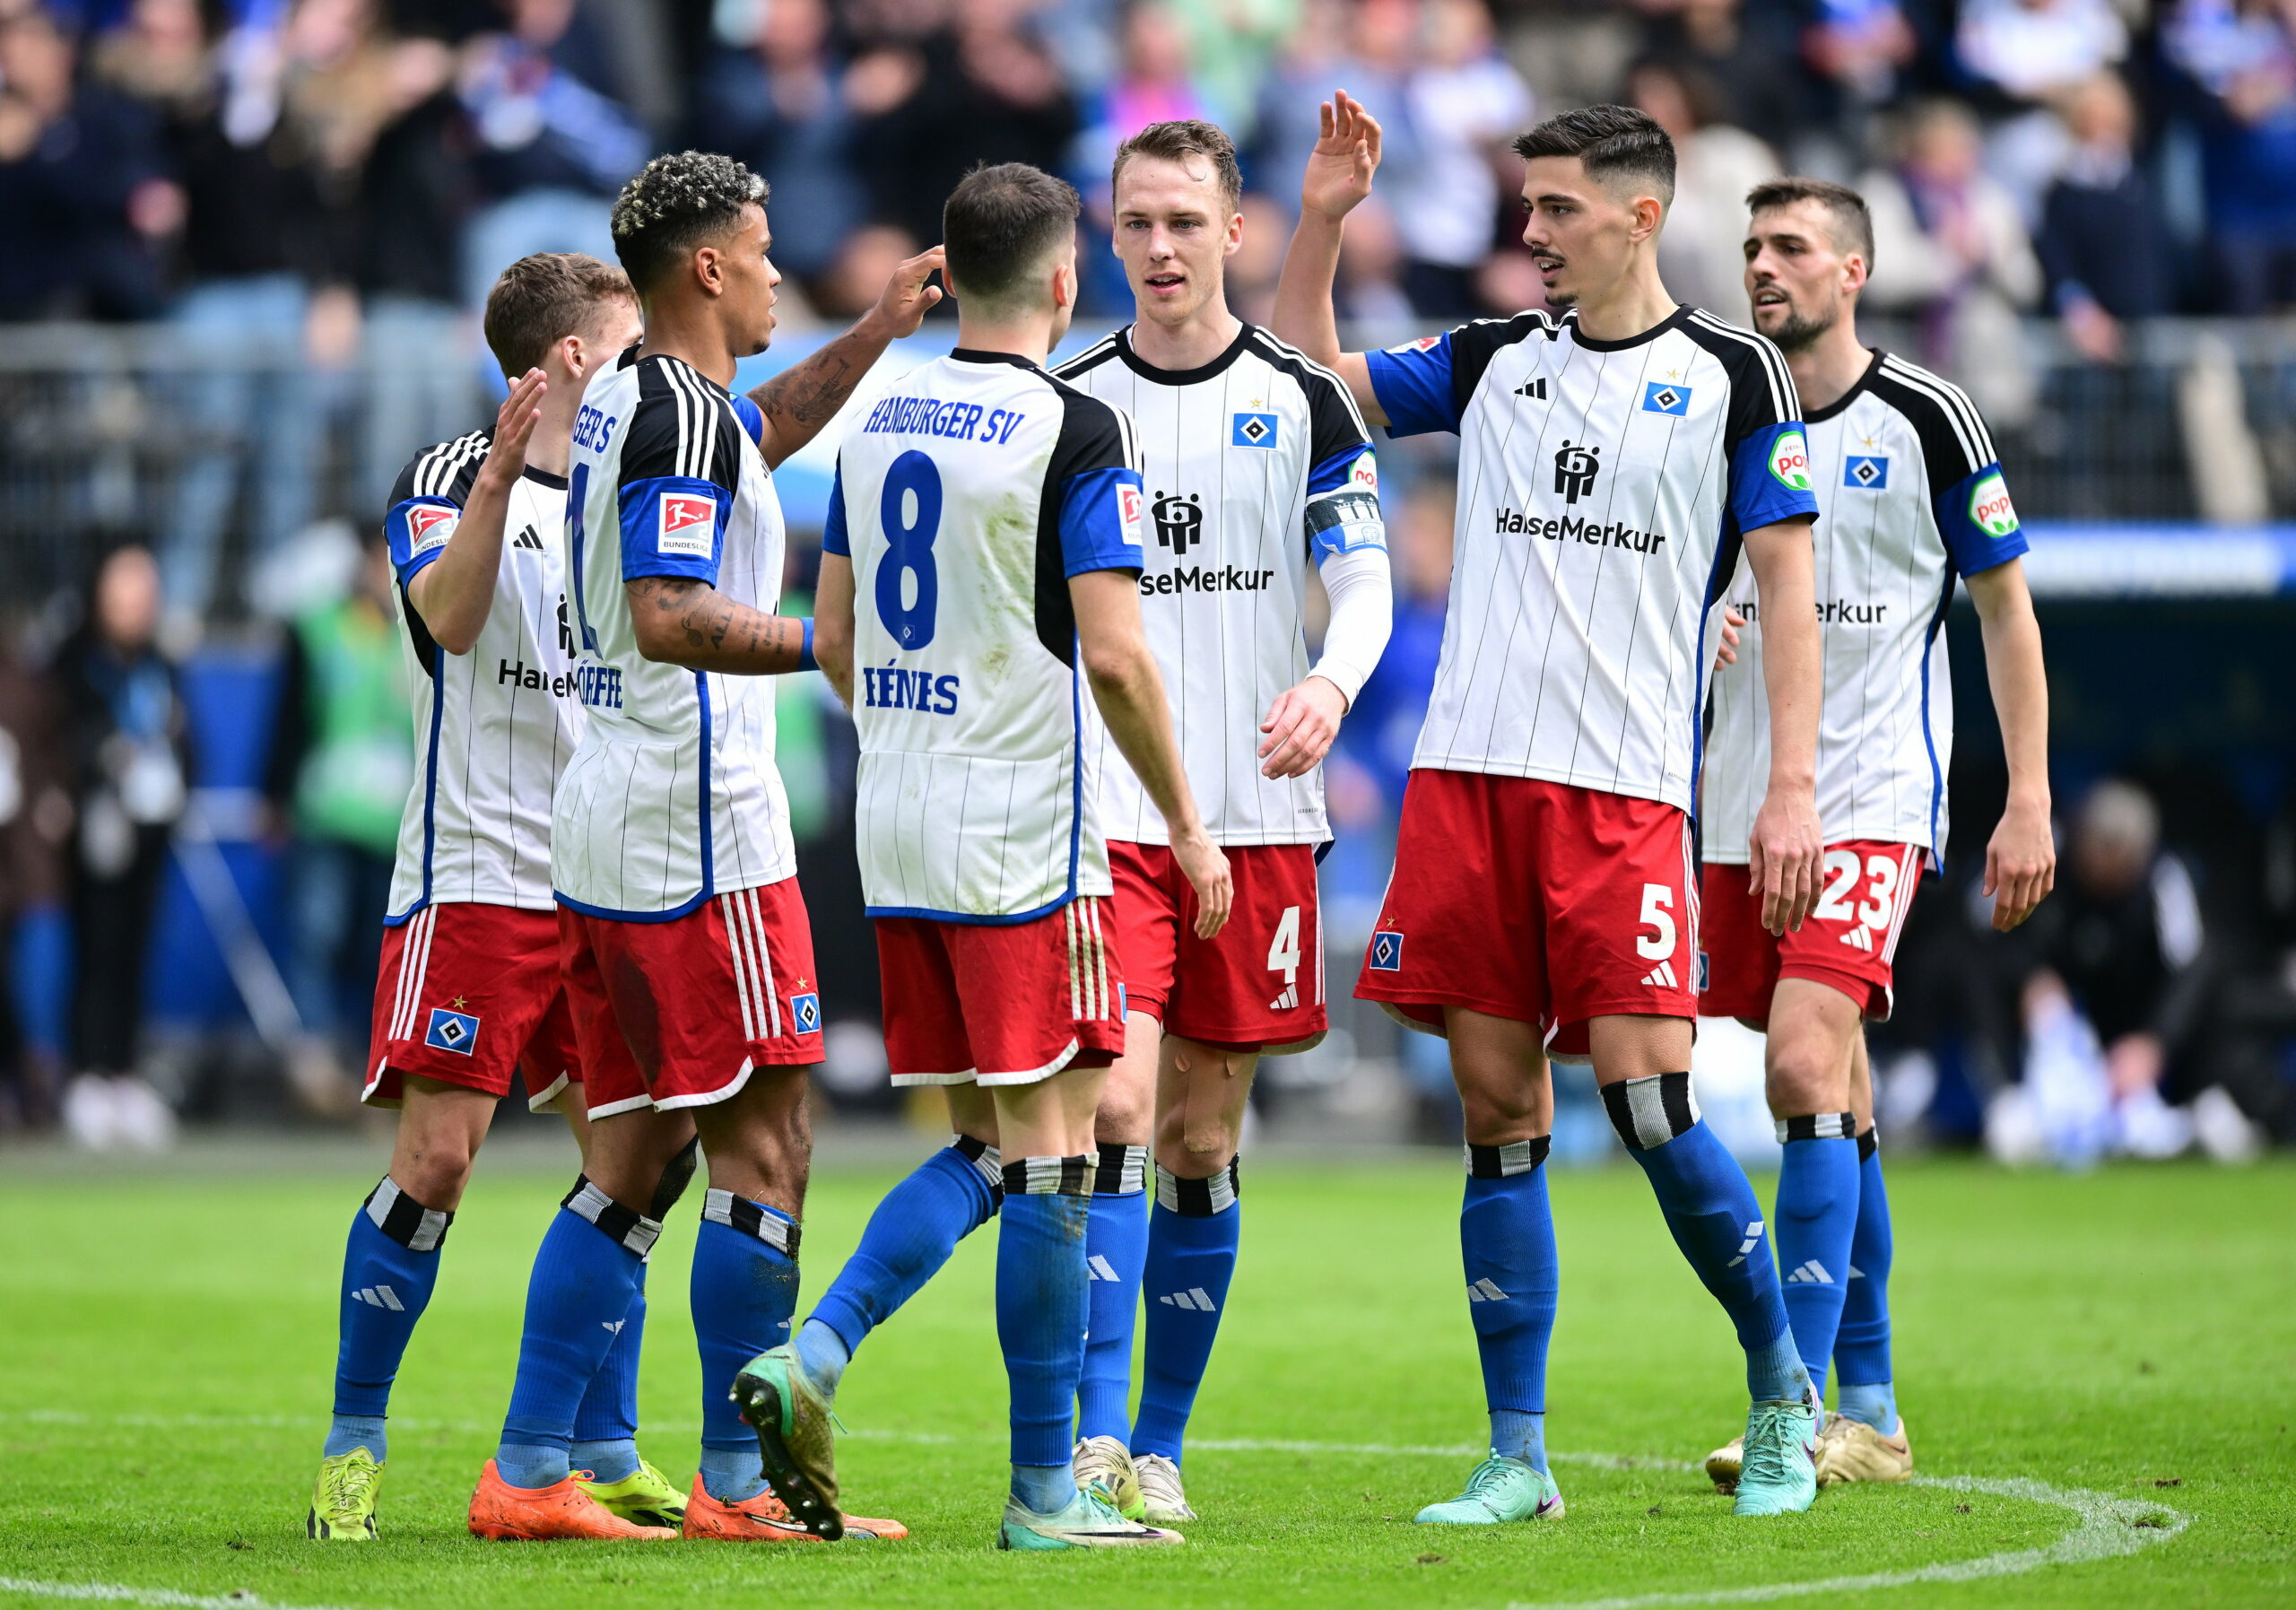 Endlich wieder zusammen jubeln: Die HSV-Profis freuten sich über ein 3:0 gegen Wiesbaden.